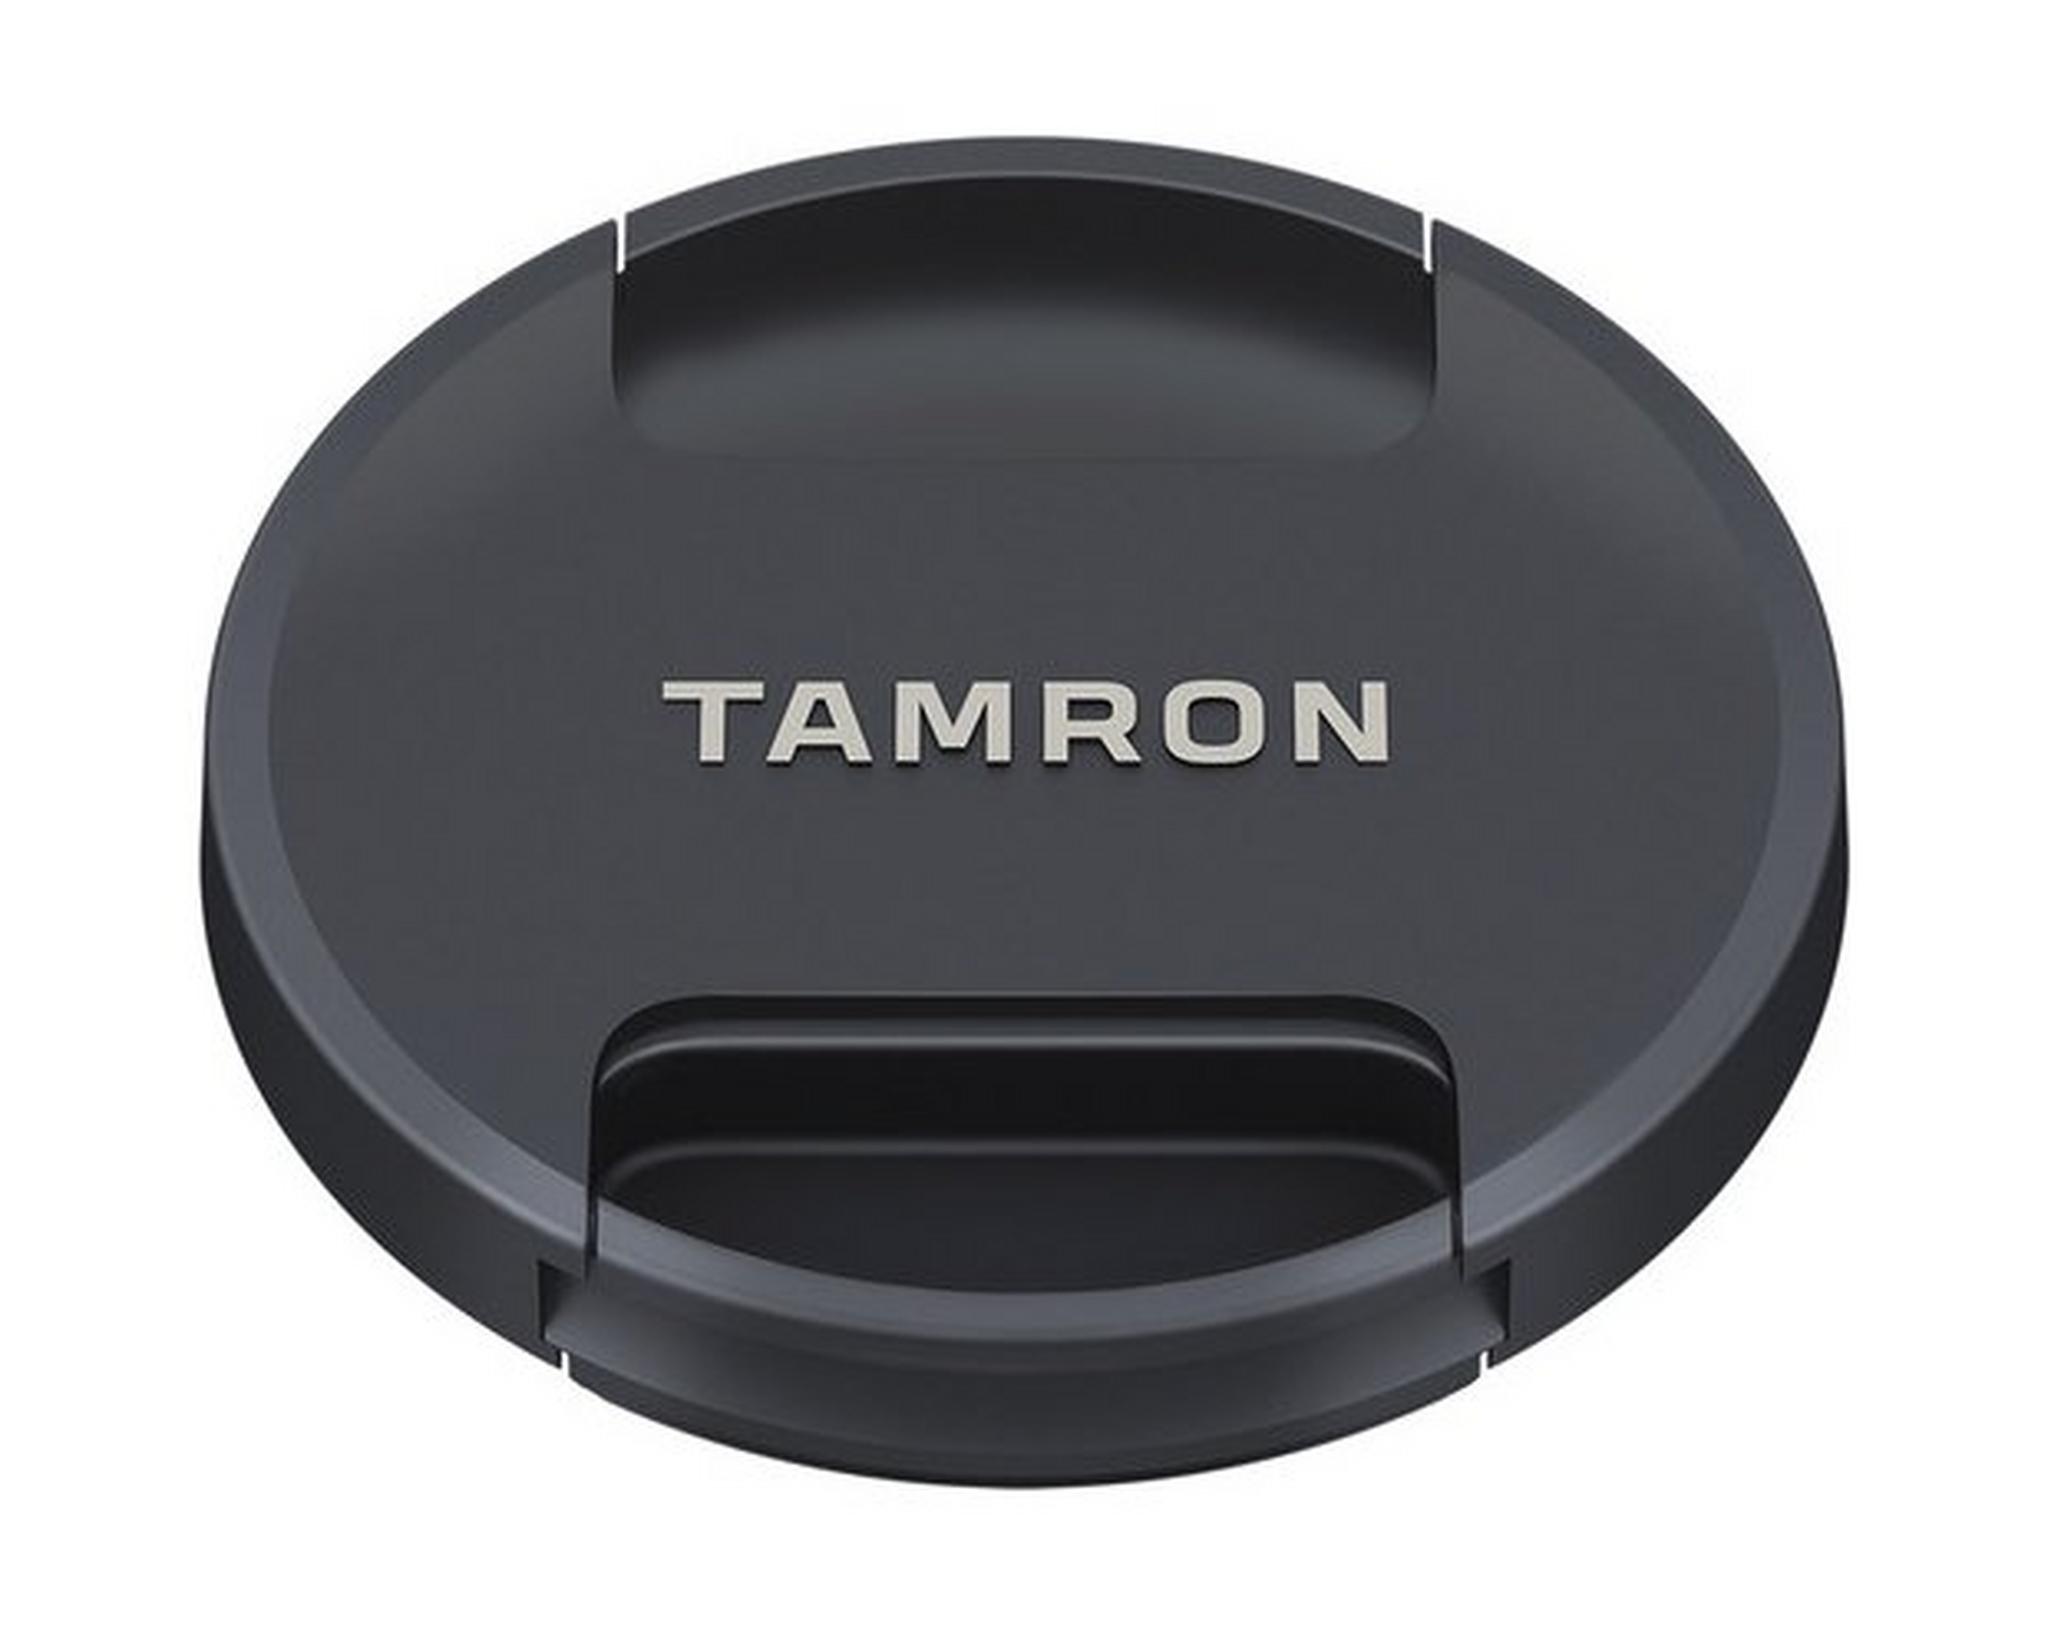 Tamron A025E 70-200mm f/2.8 Di VC USD G2 Lens for Canon - Black